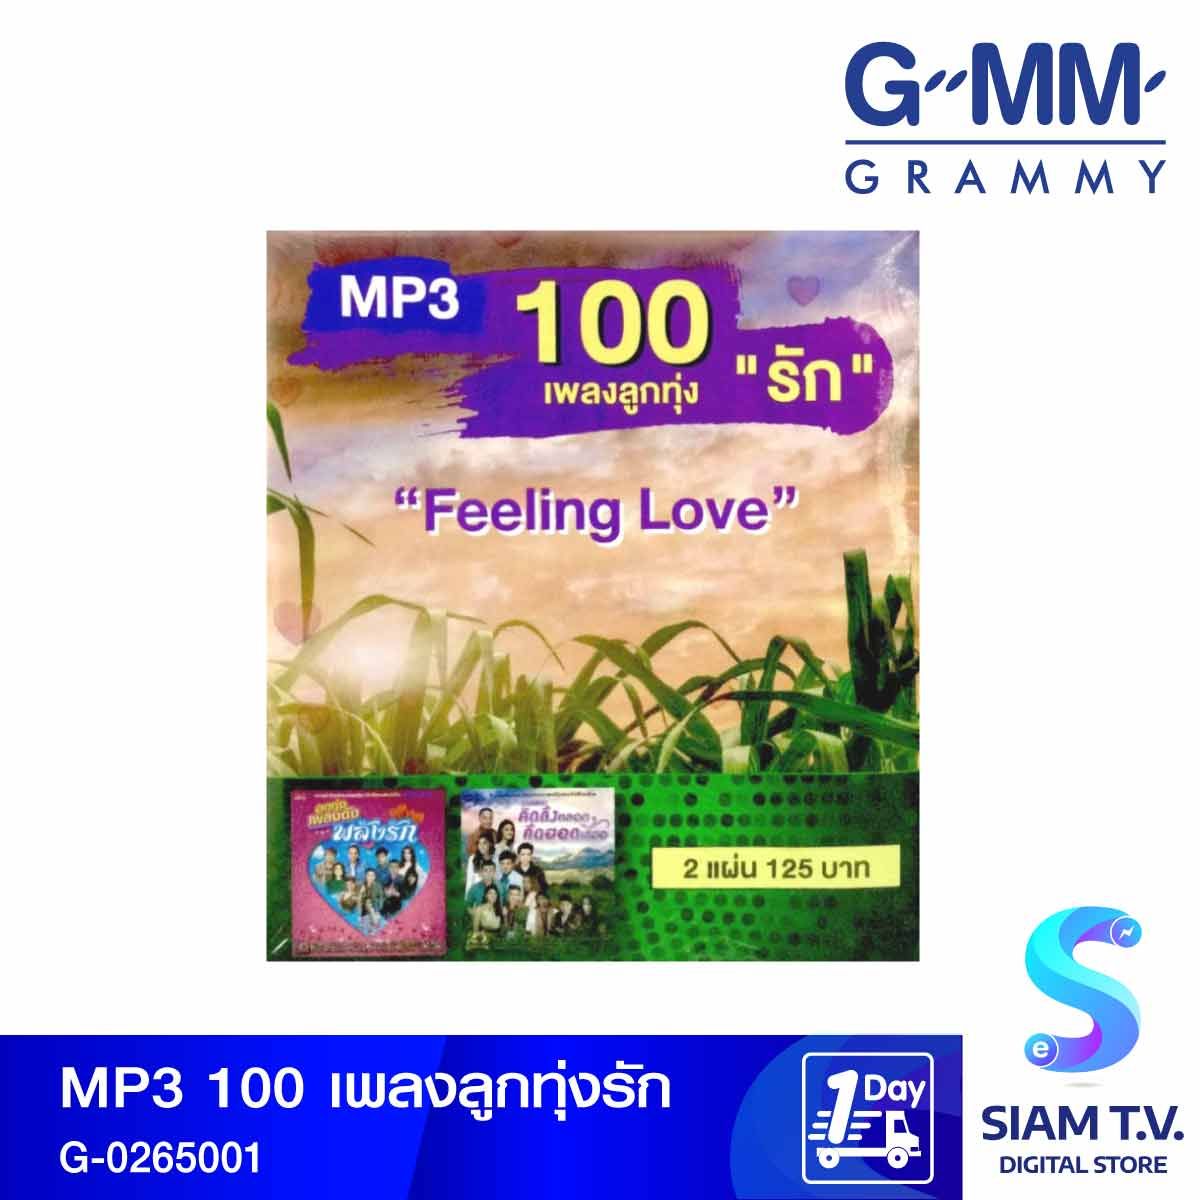 GMM GRAMMY MP3 เพลงลูกทุ่งรักPromtion G-0265001